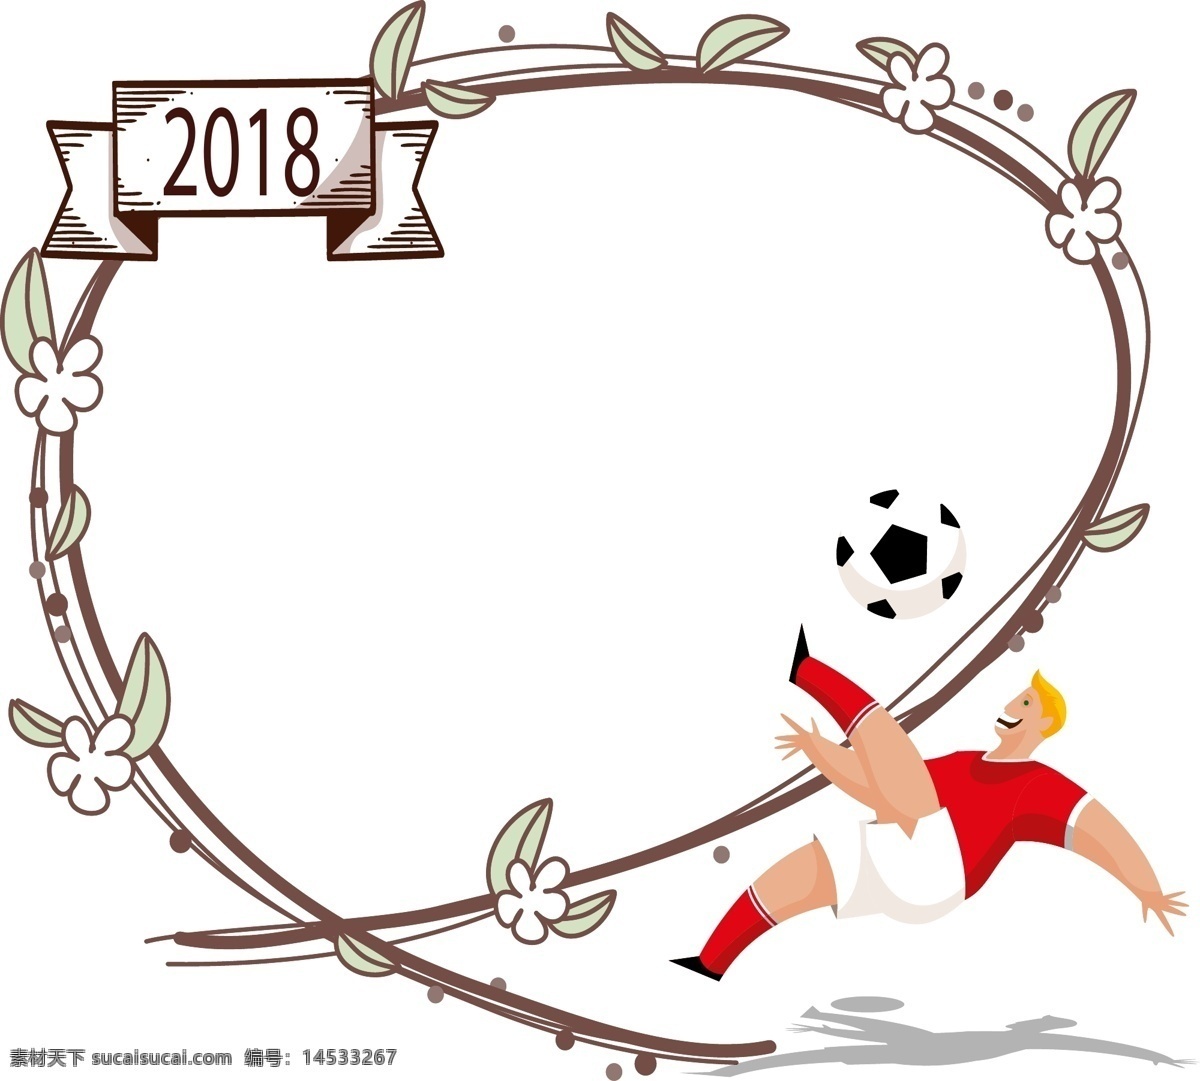 世界杯 足球比赛 用品 边框 2018 俄罗斯 足球 比赛 云朵边框 足球鞋 守门员手套 定时器 清新边框 世界杯边框